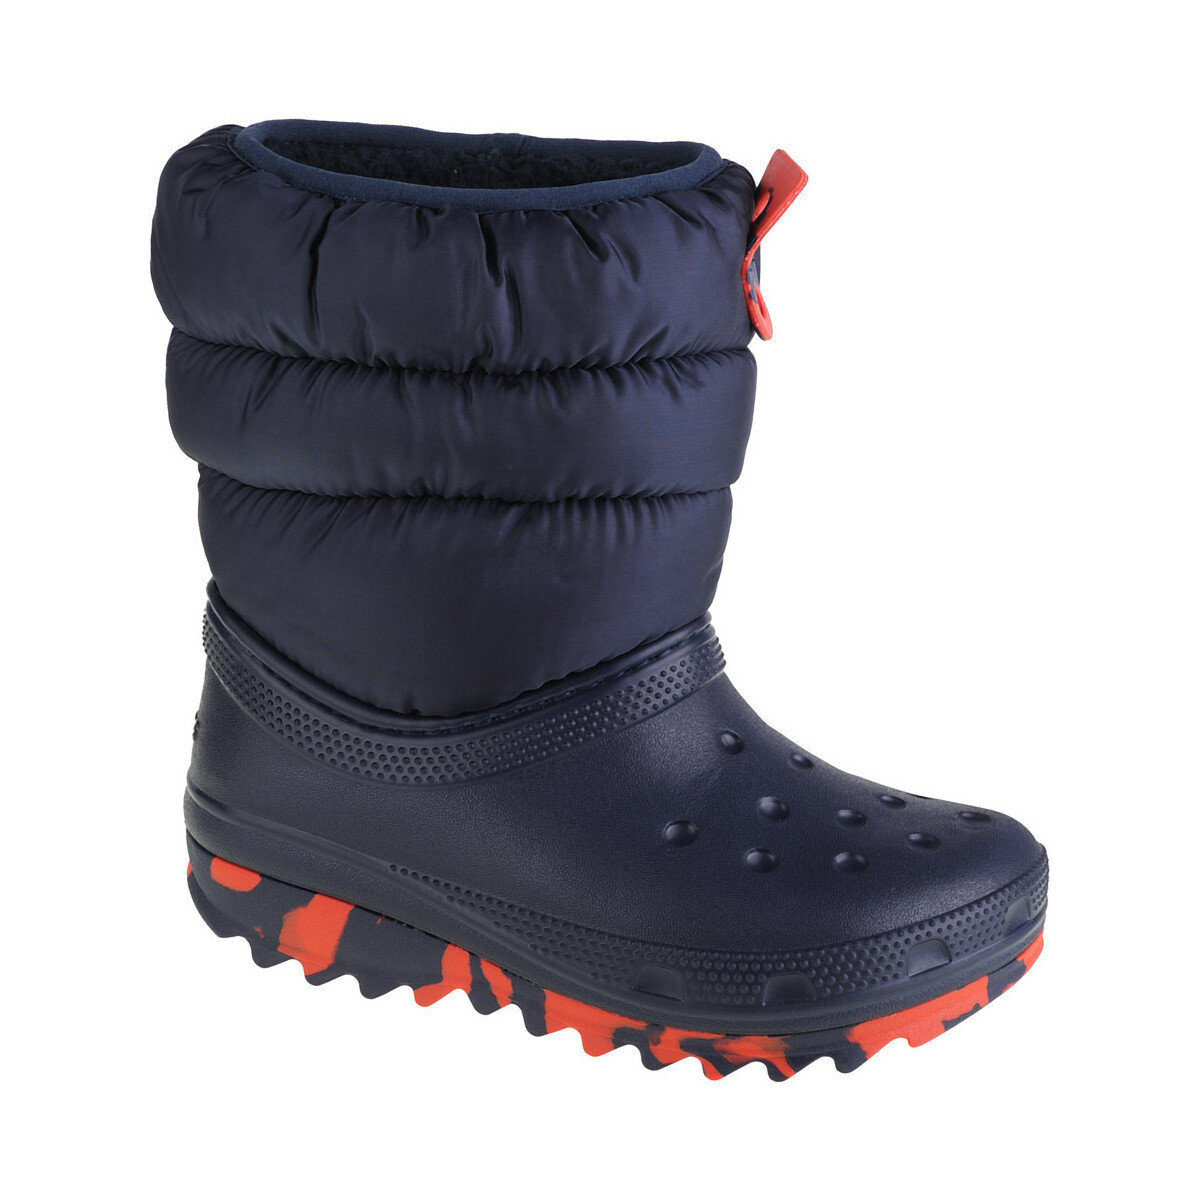 Schoenen Jongens Snowboots Crocs Classic Neo Puff Boot Kids Blauw